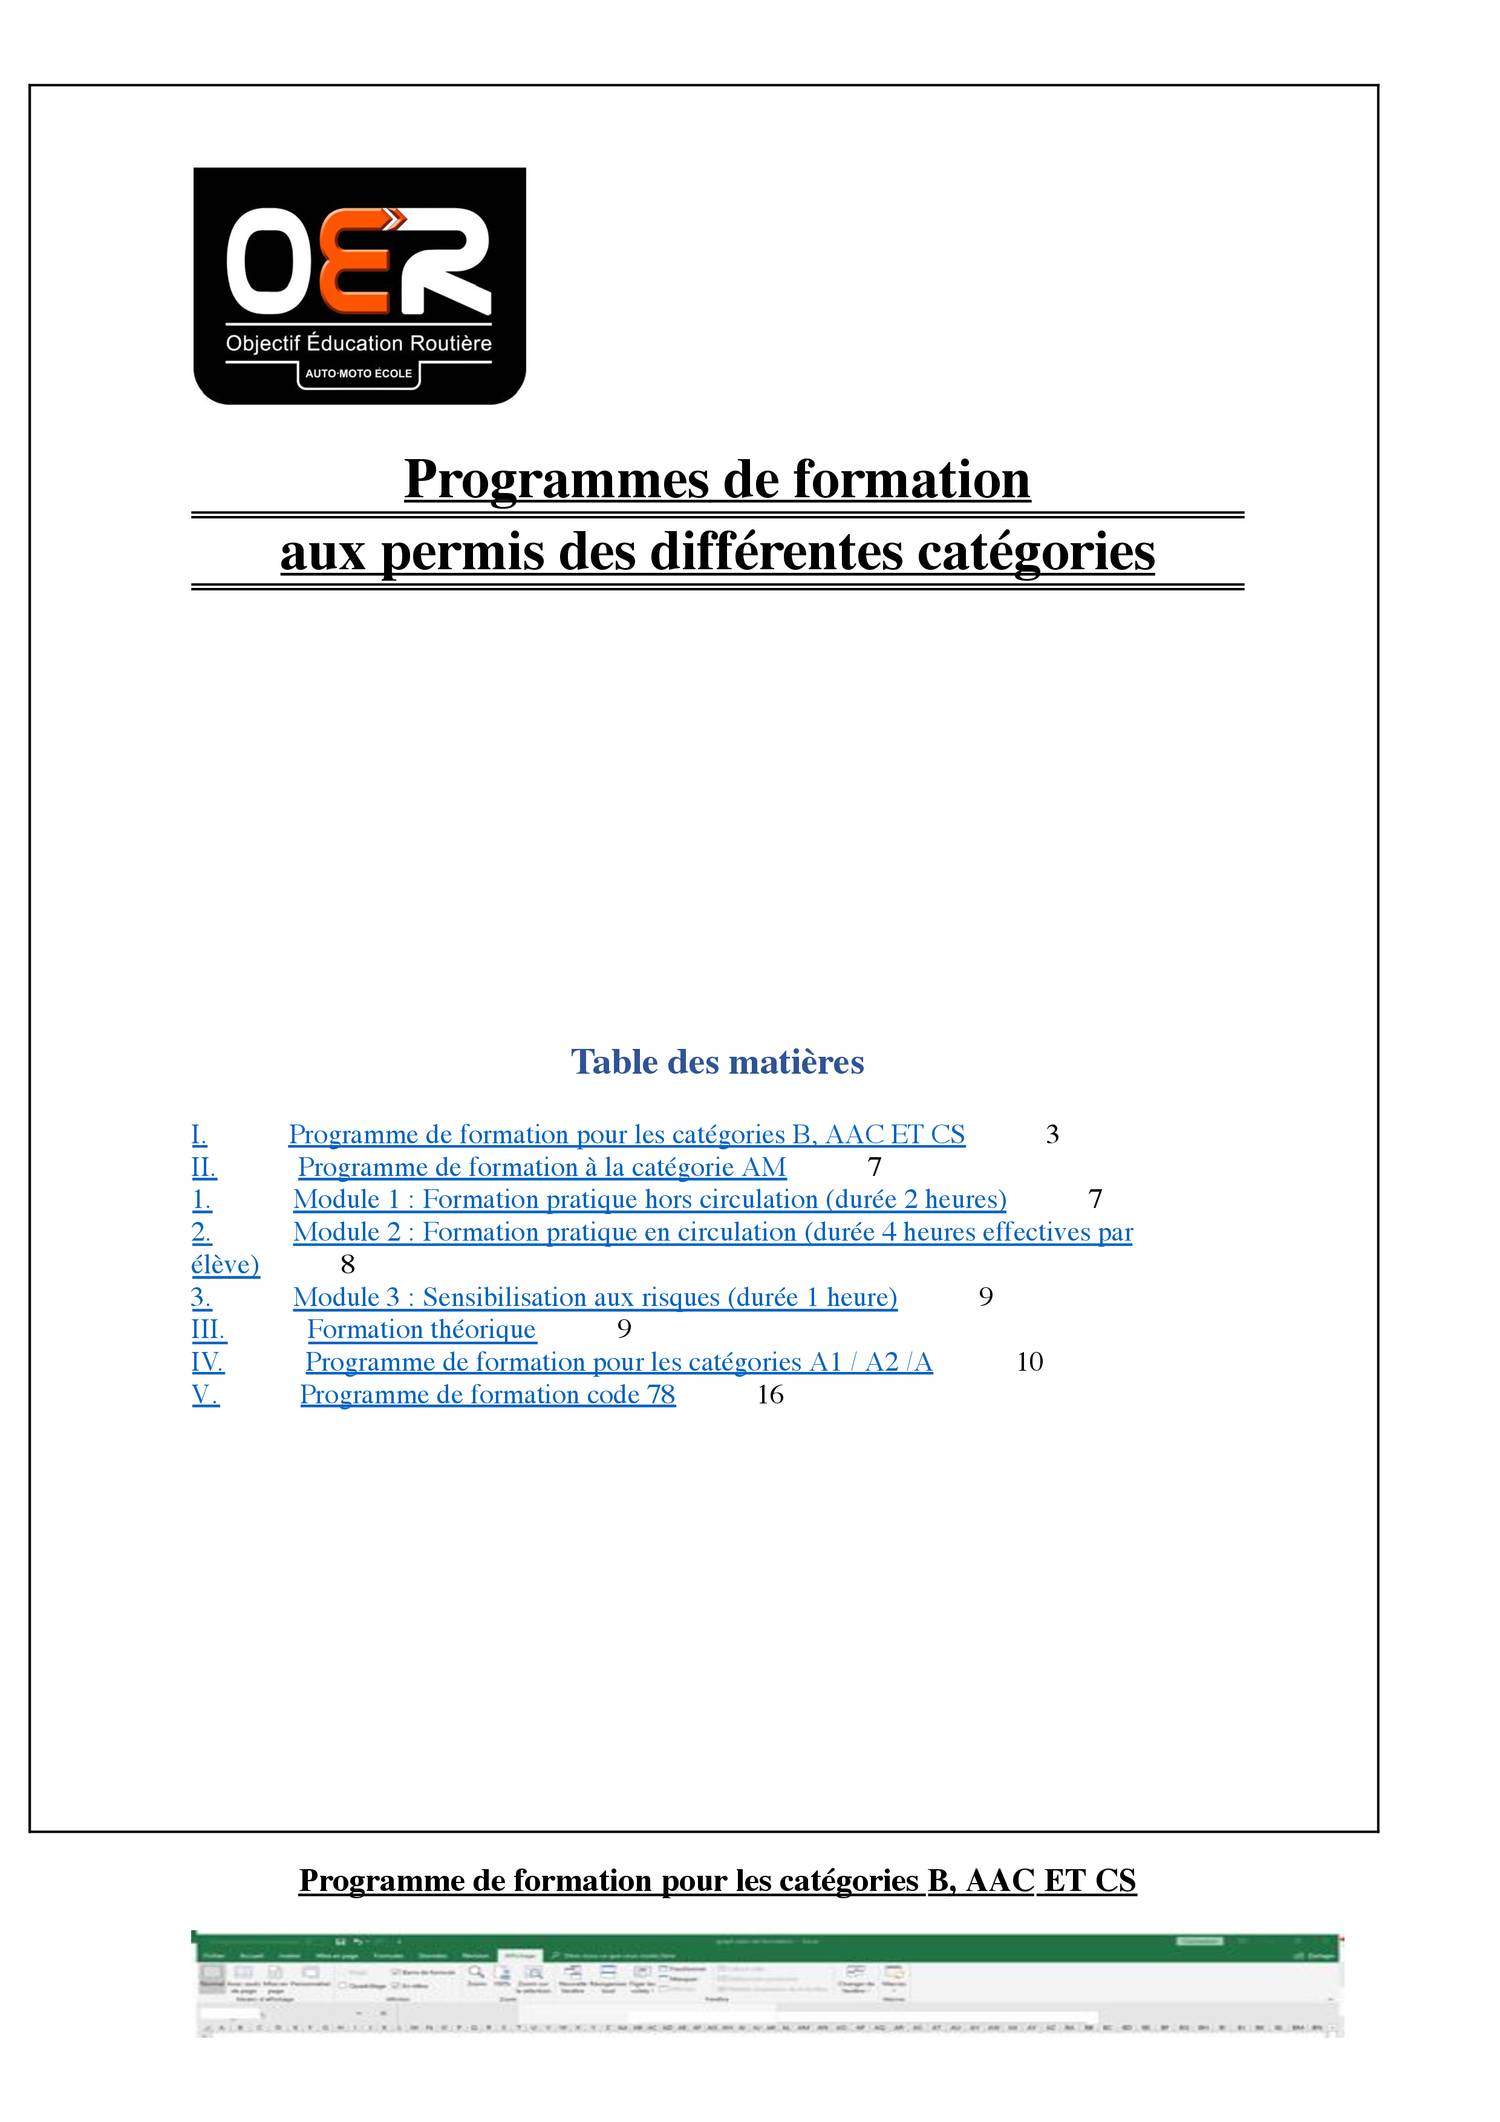 Autoécole programme de formation.pdf  DocDroid